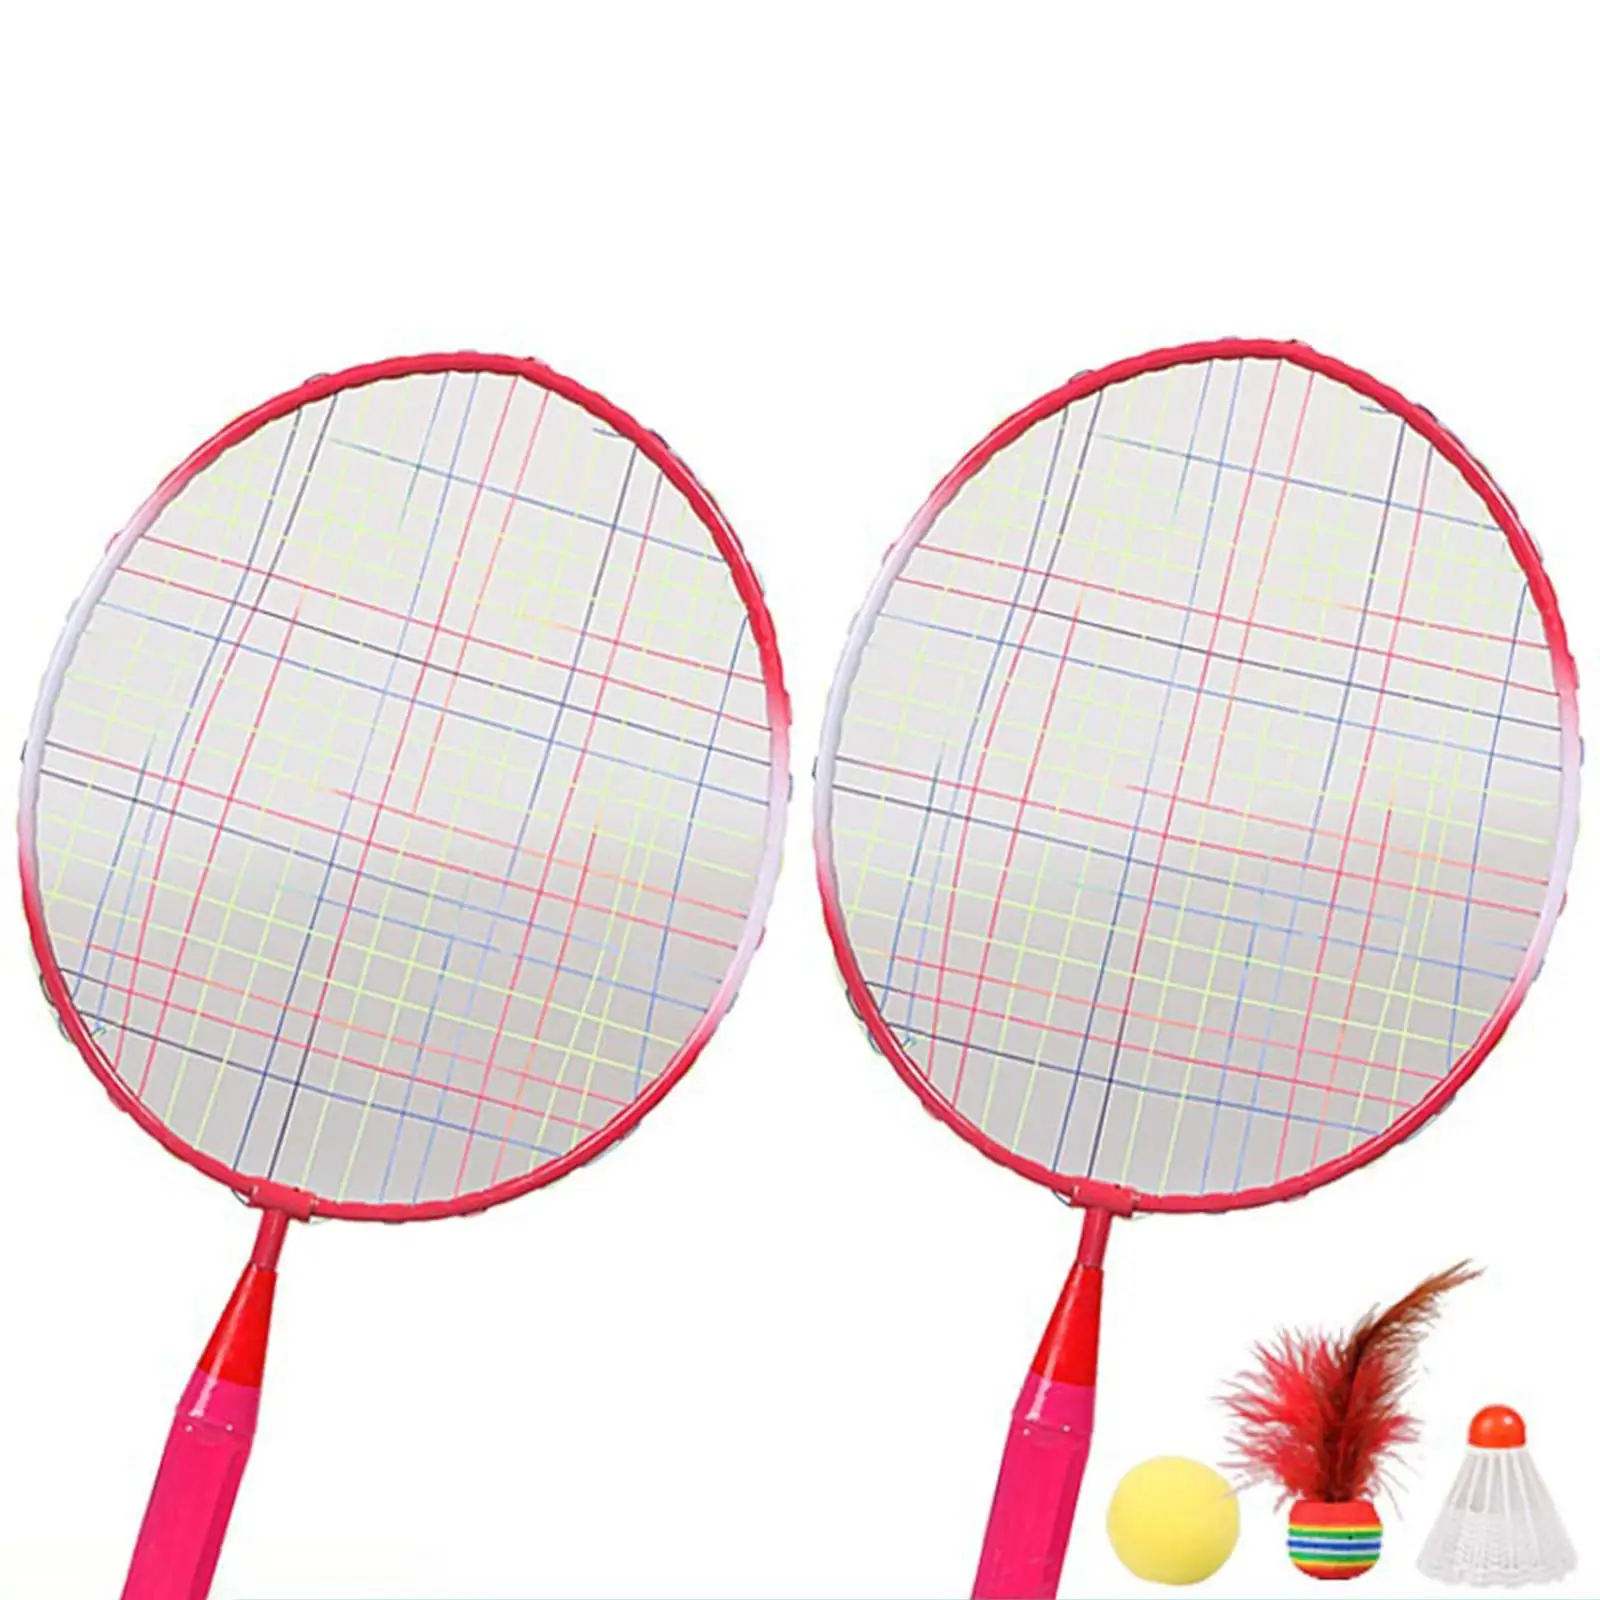 Badminton Rackets for Children Shuttlecocks for Kids Starter Players Toddler